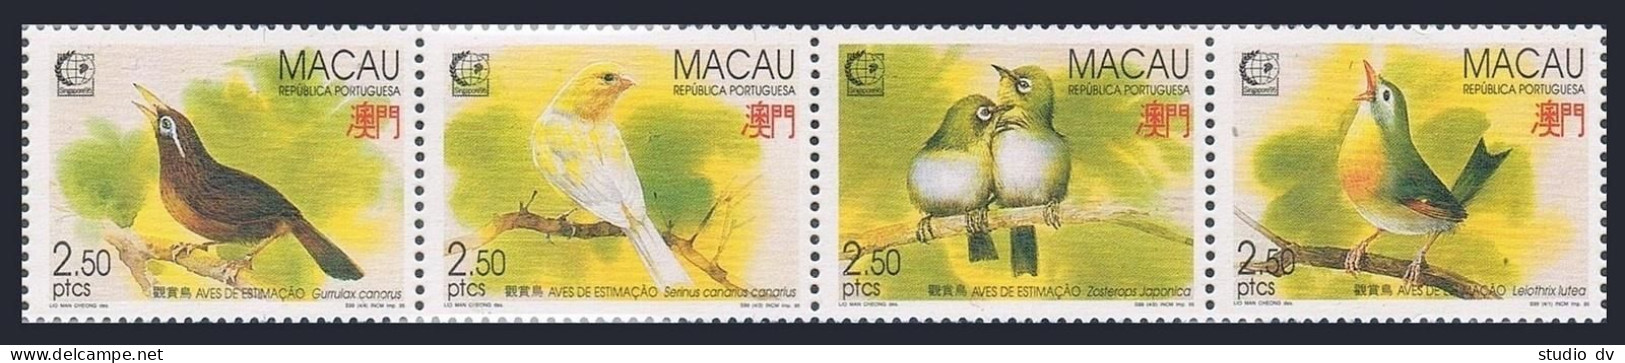 Macao 786-789a Strip, MNH. Michel 814-817. SINGAPORE-1995. Birds. - Ongebruikt